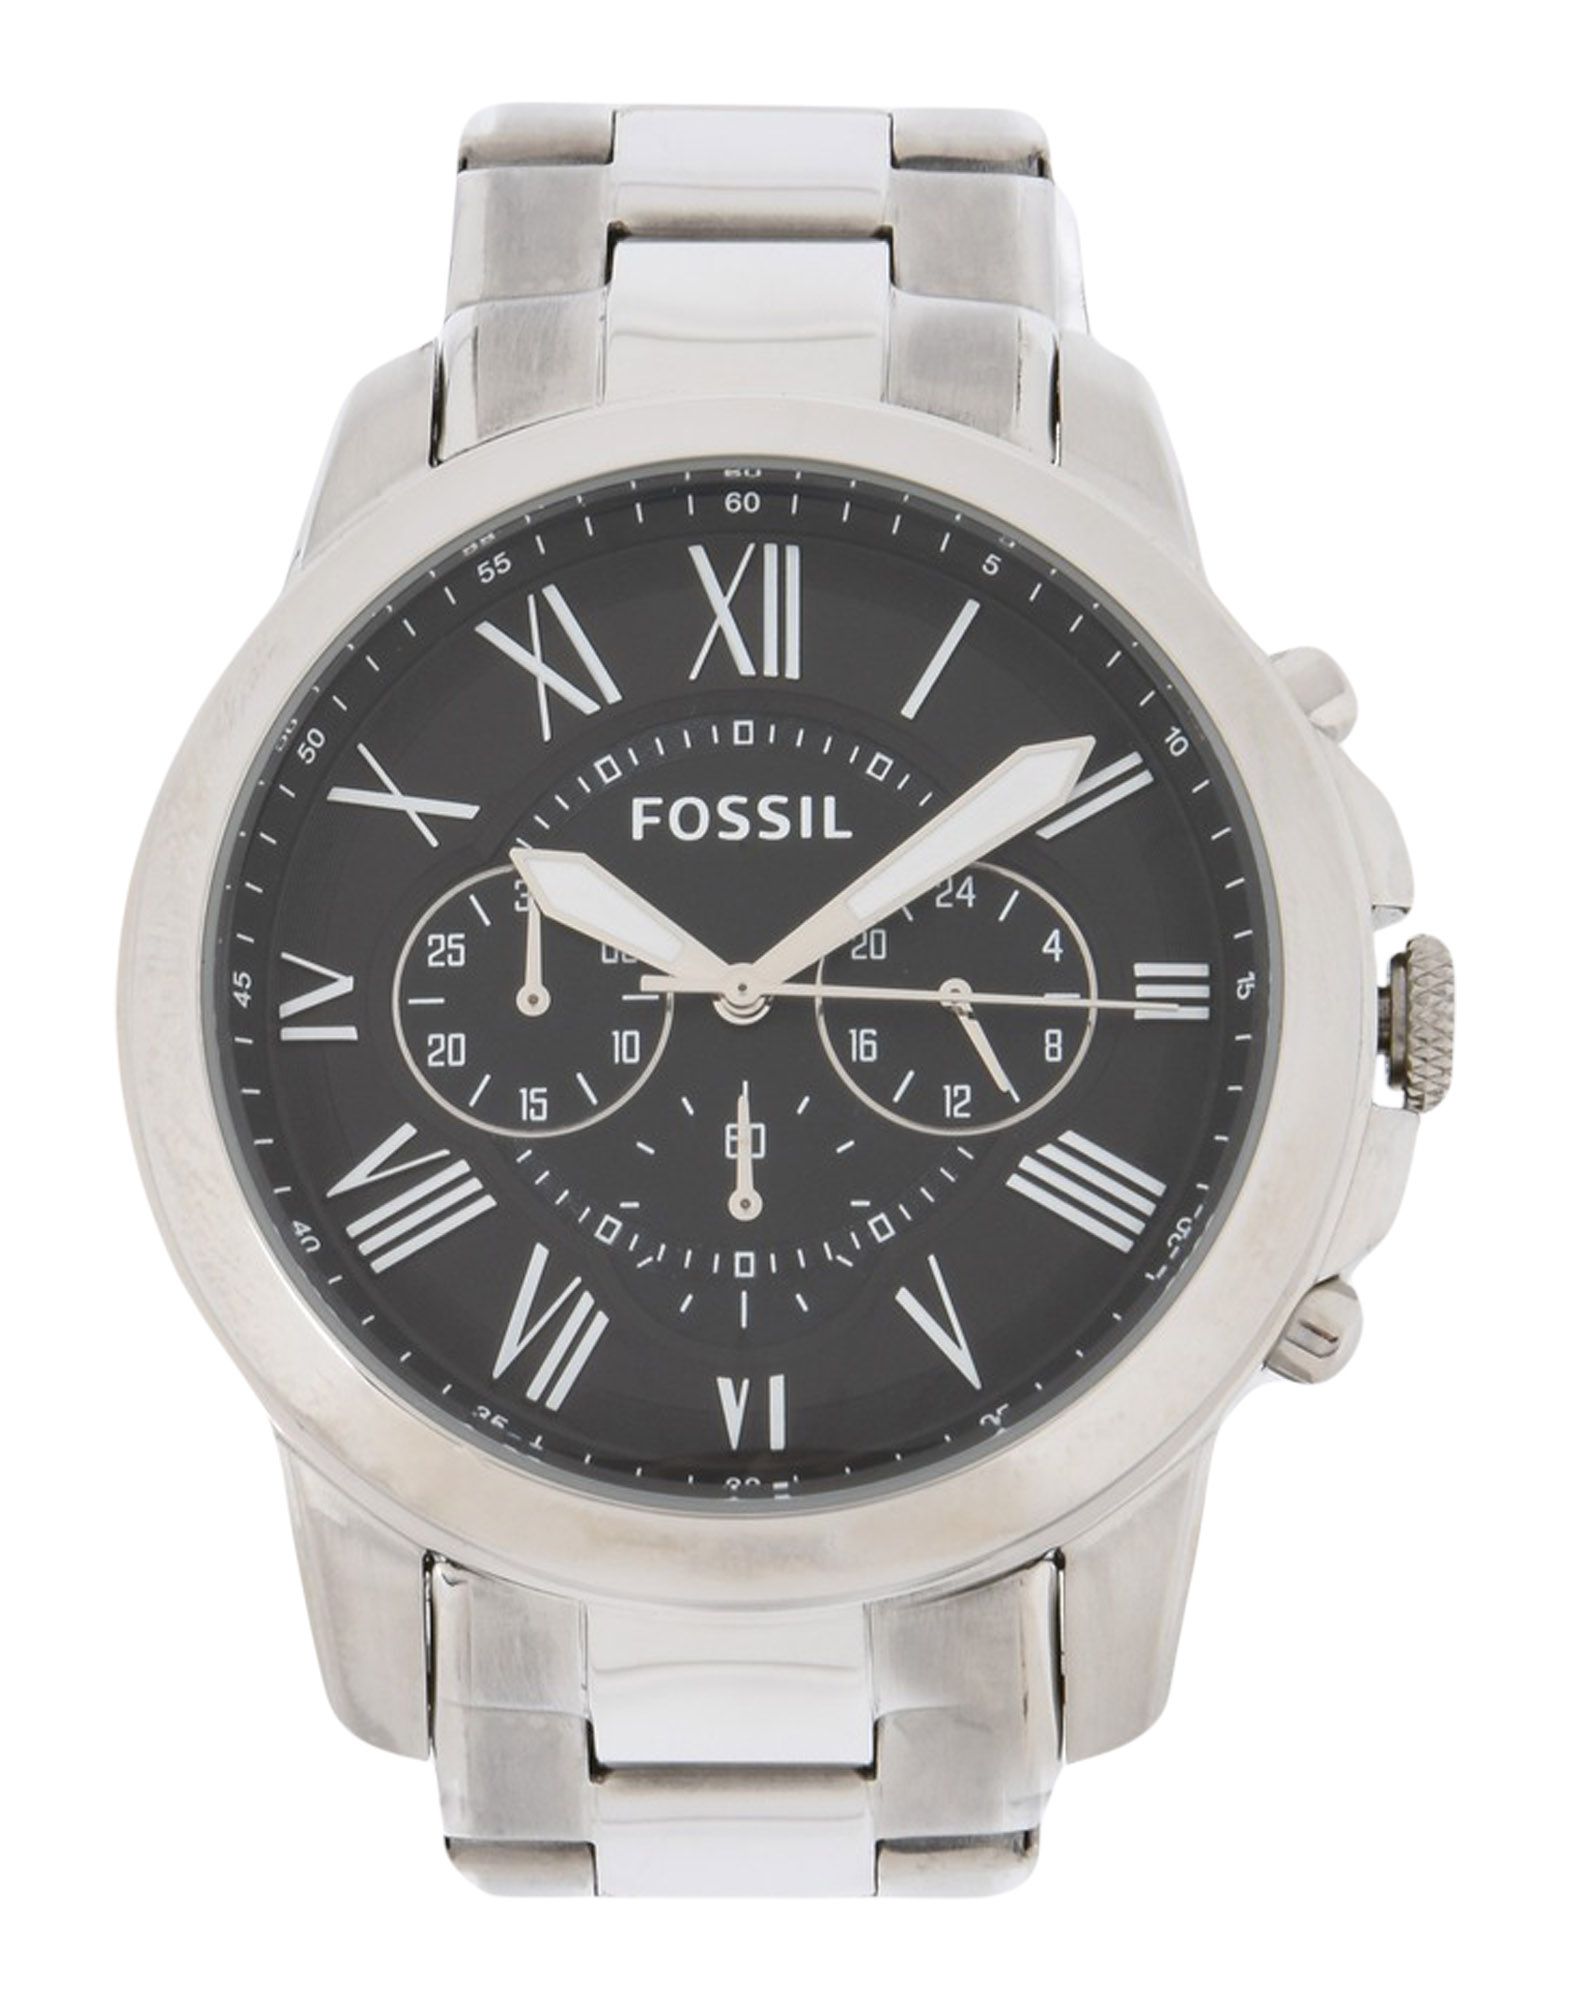 《送料無料》FOSSIL メンズ 腕時計 シルバー ステンレススチール GRANT